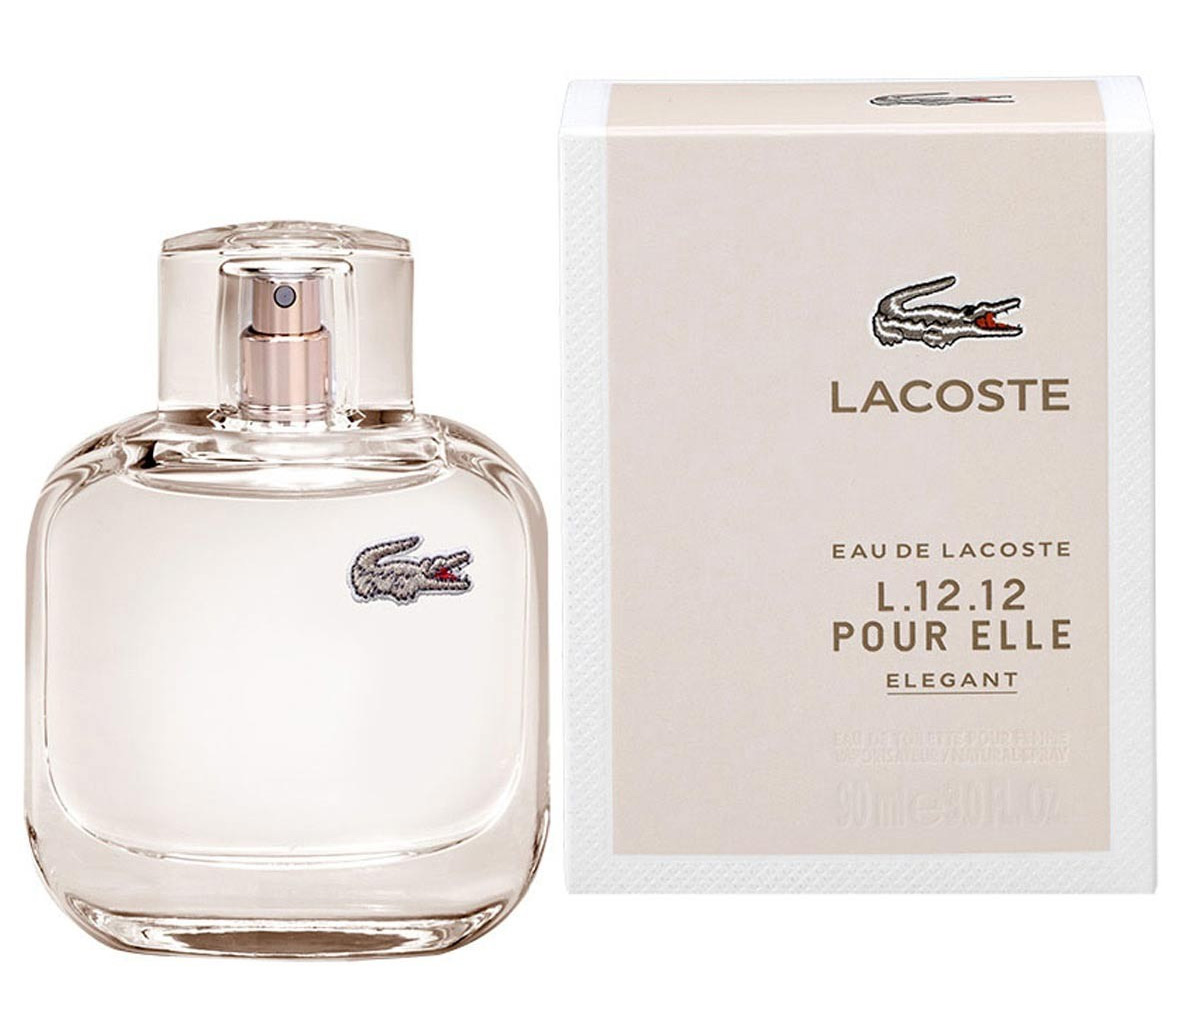 Eau de Lacoste L.12.12 Pour Elle Elegant Lacoste perfume - a new ...